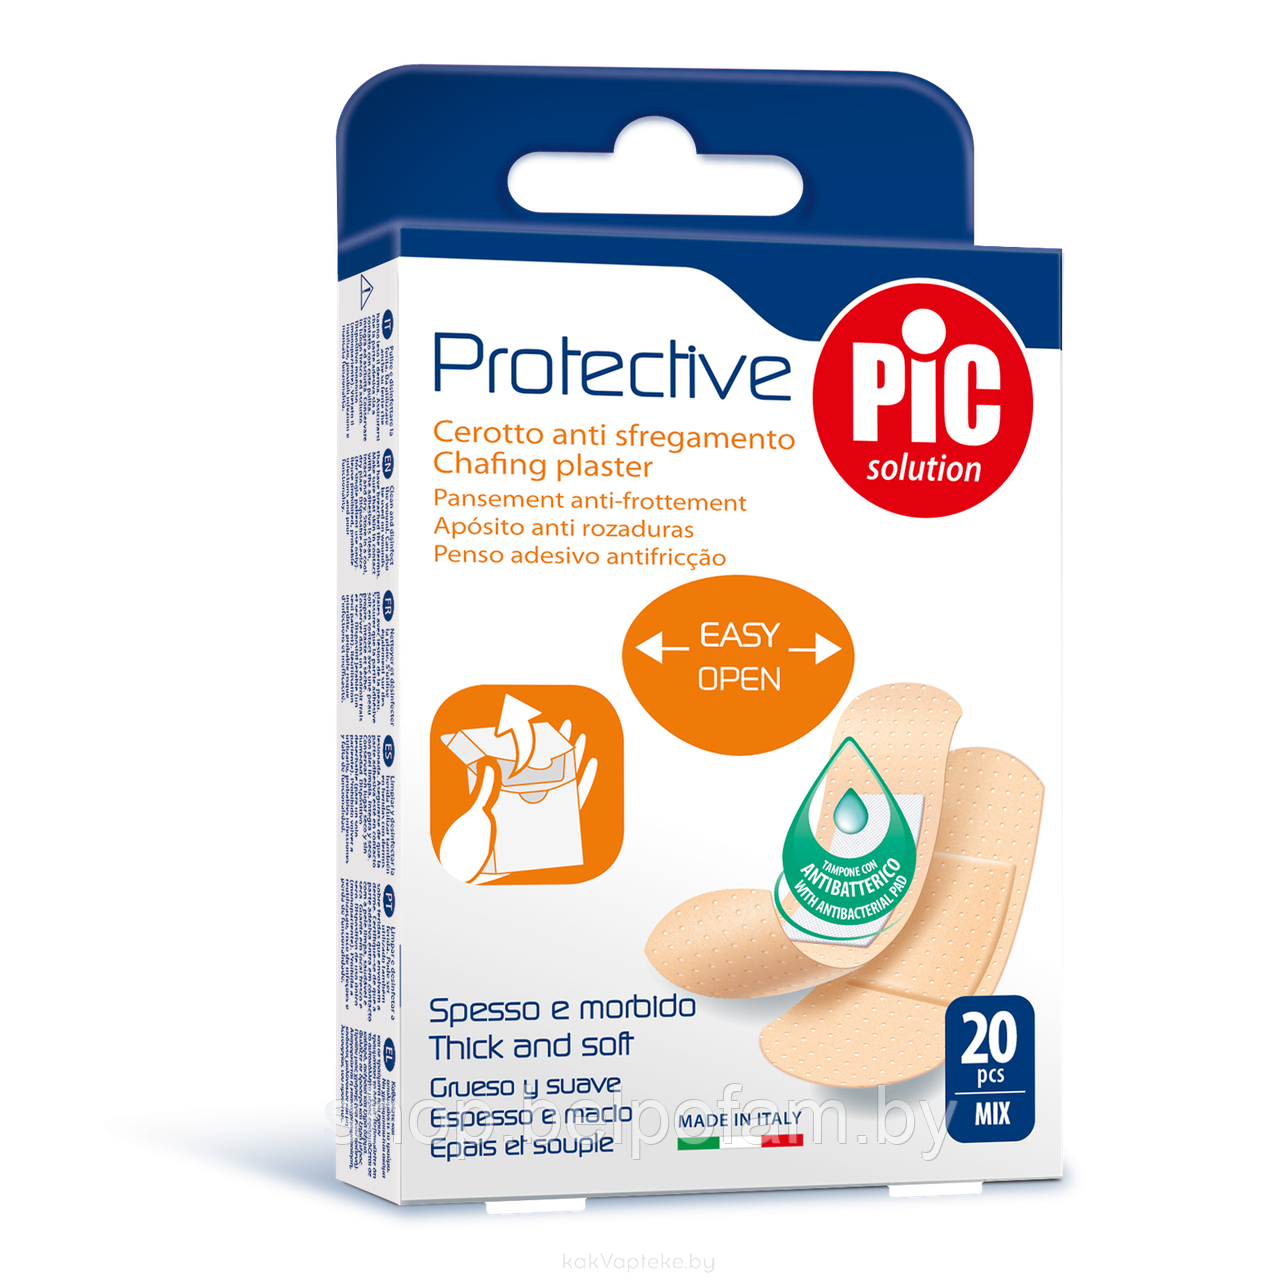 Пластырь с антибактериальной подушечкой Protective Pic Solution уп. 20 шт.